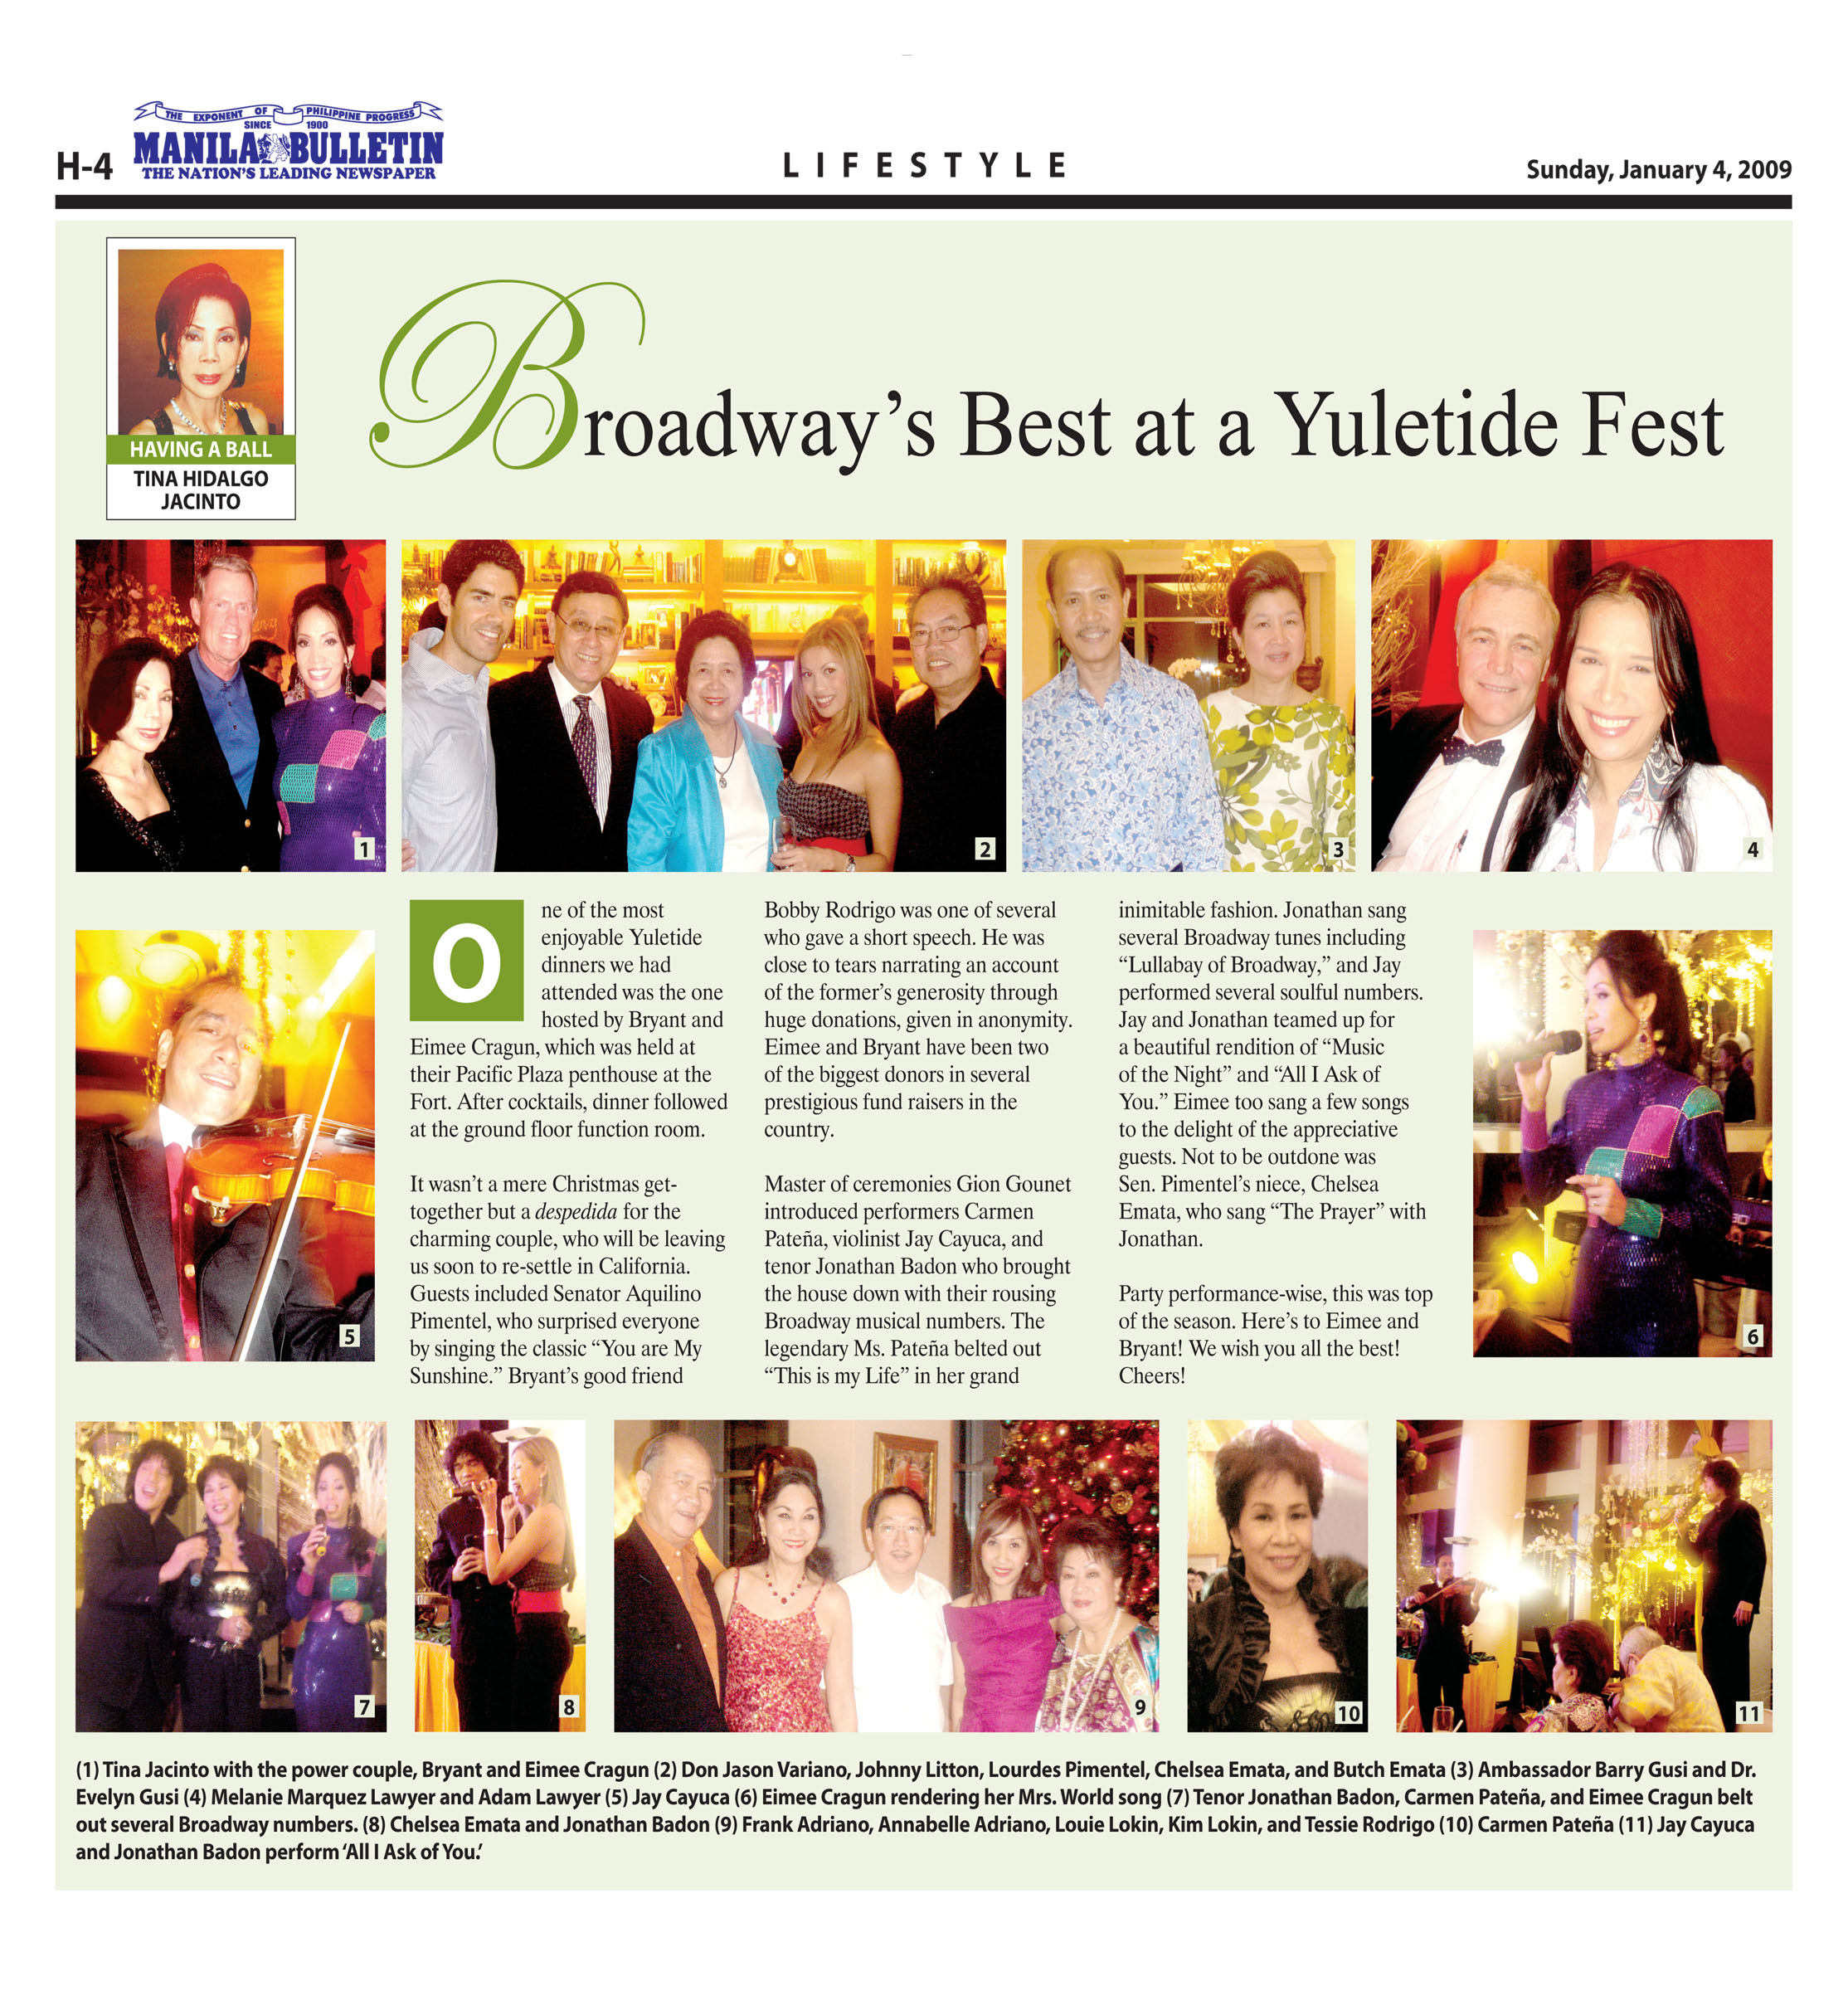 Broadway Best at a Yuletide Fest